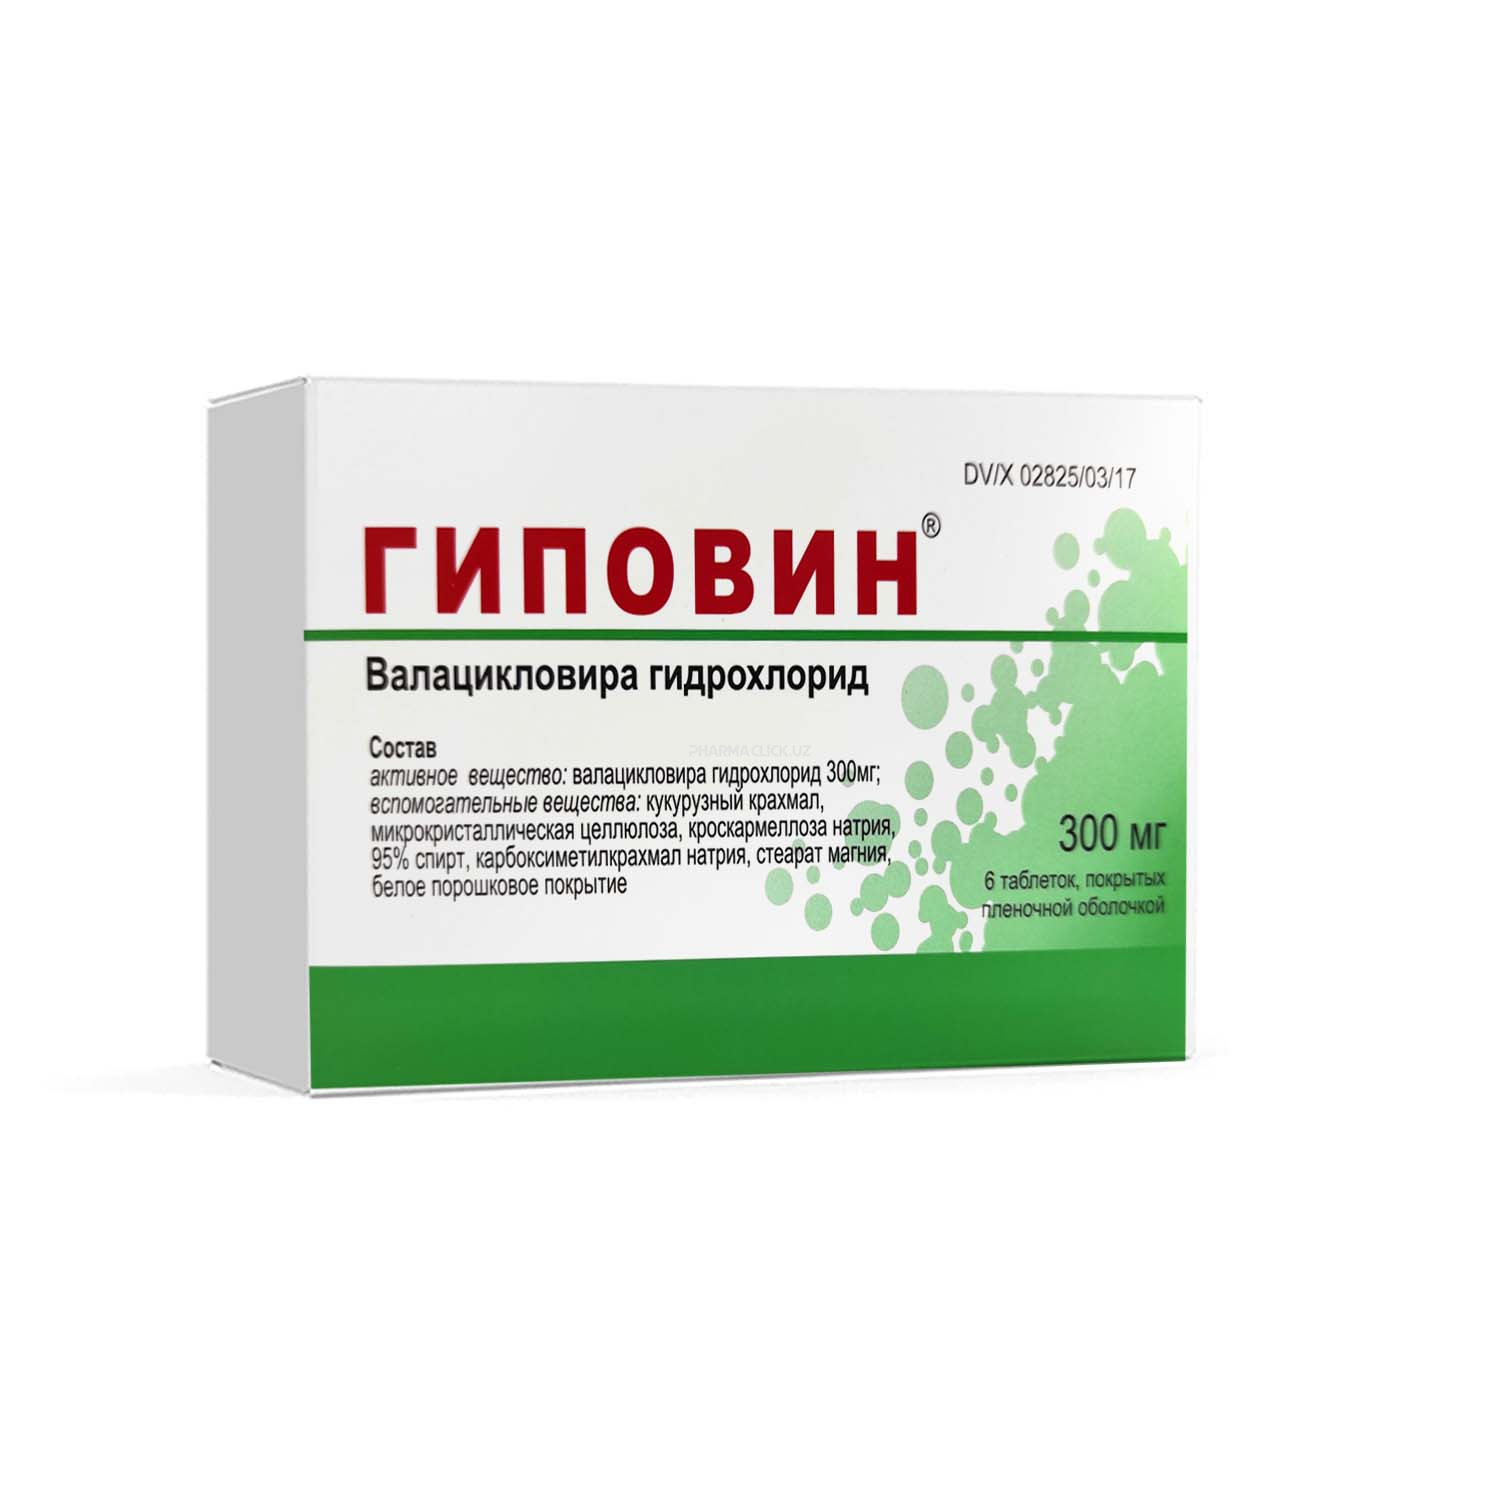 Gipovin plyonka qobiq bilan qoplangan tabletkalar 300 mg №6